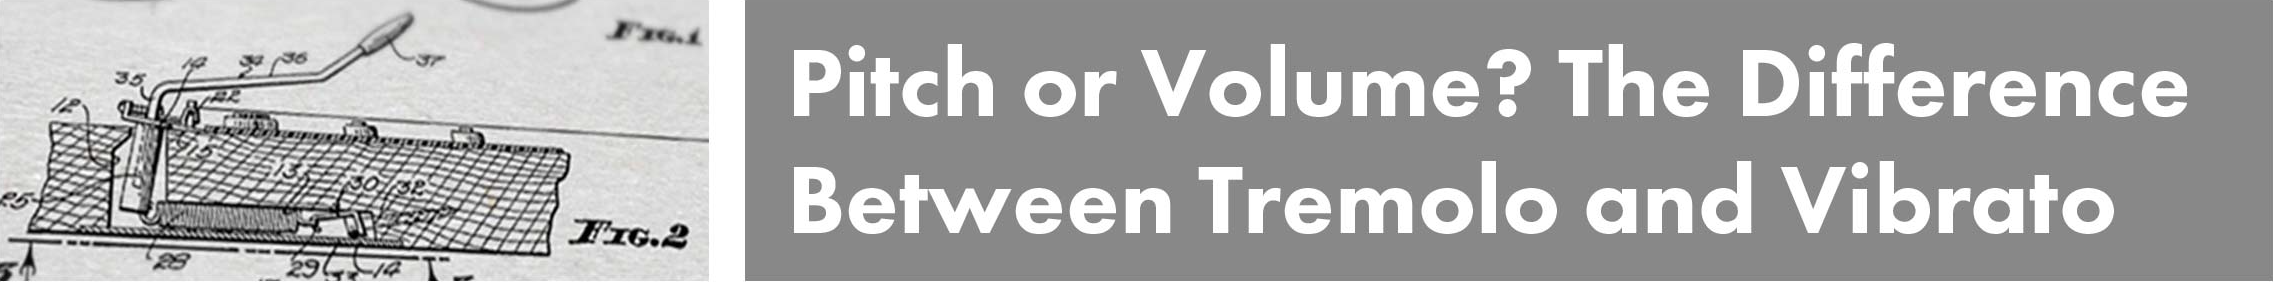 Pitch or Volume Tremolo and Vibrato